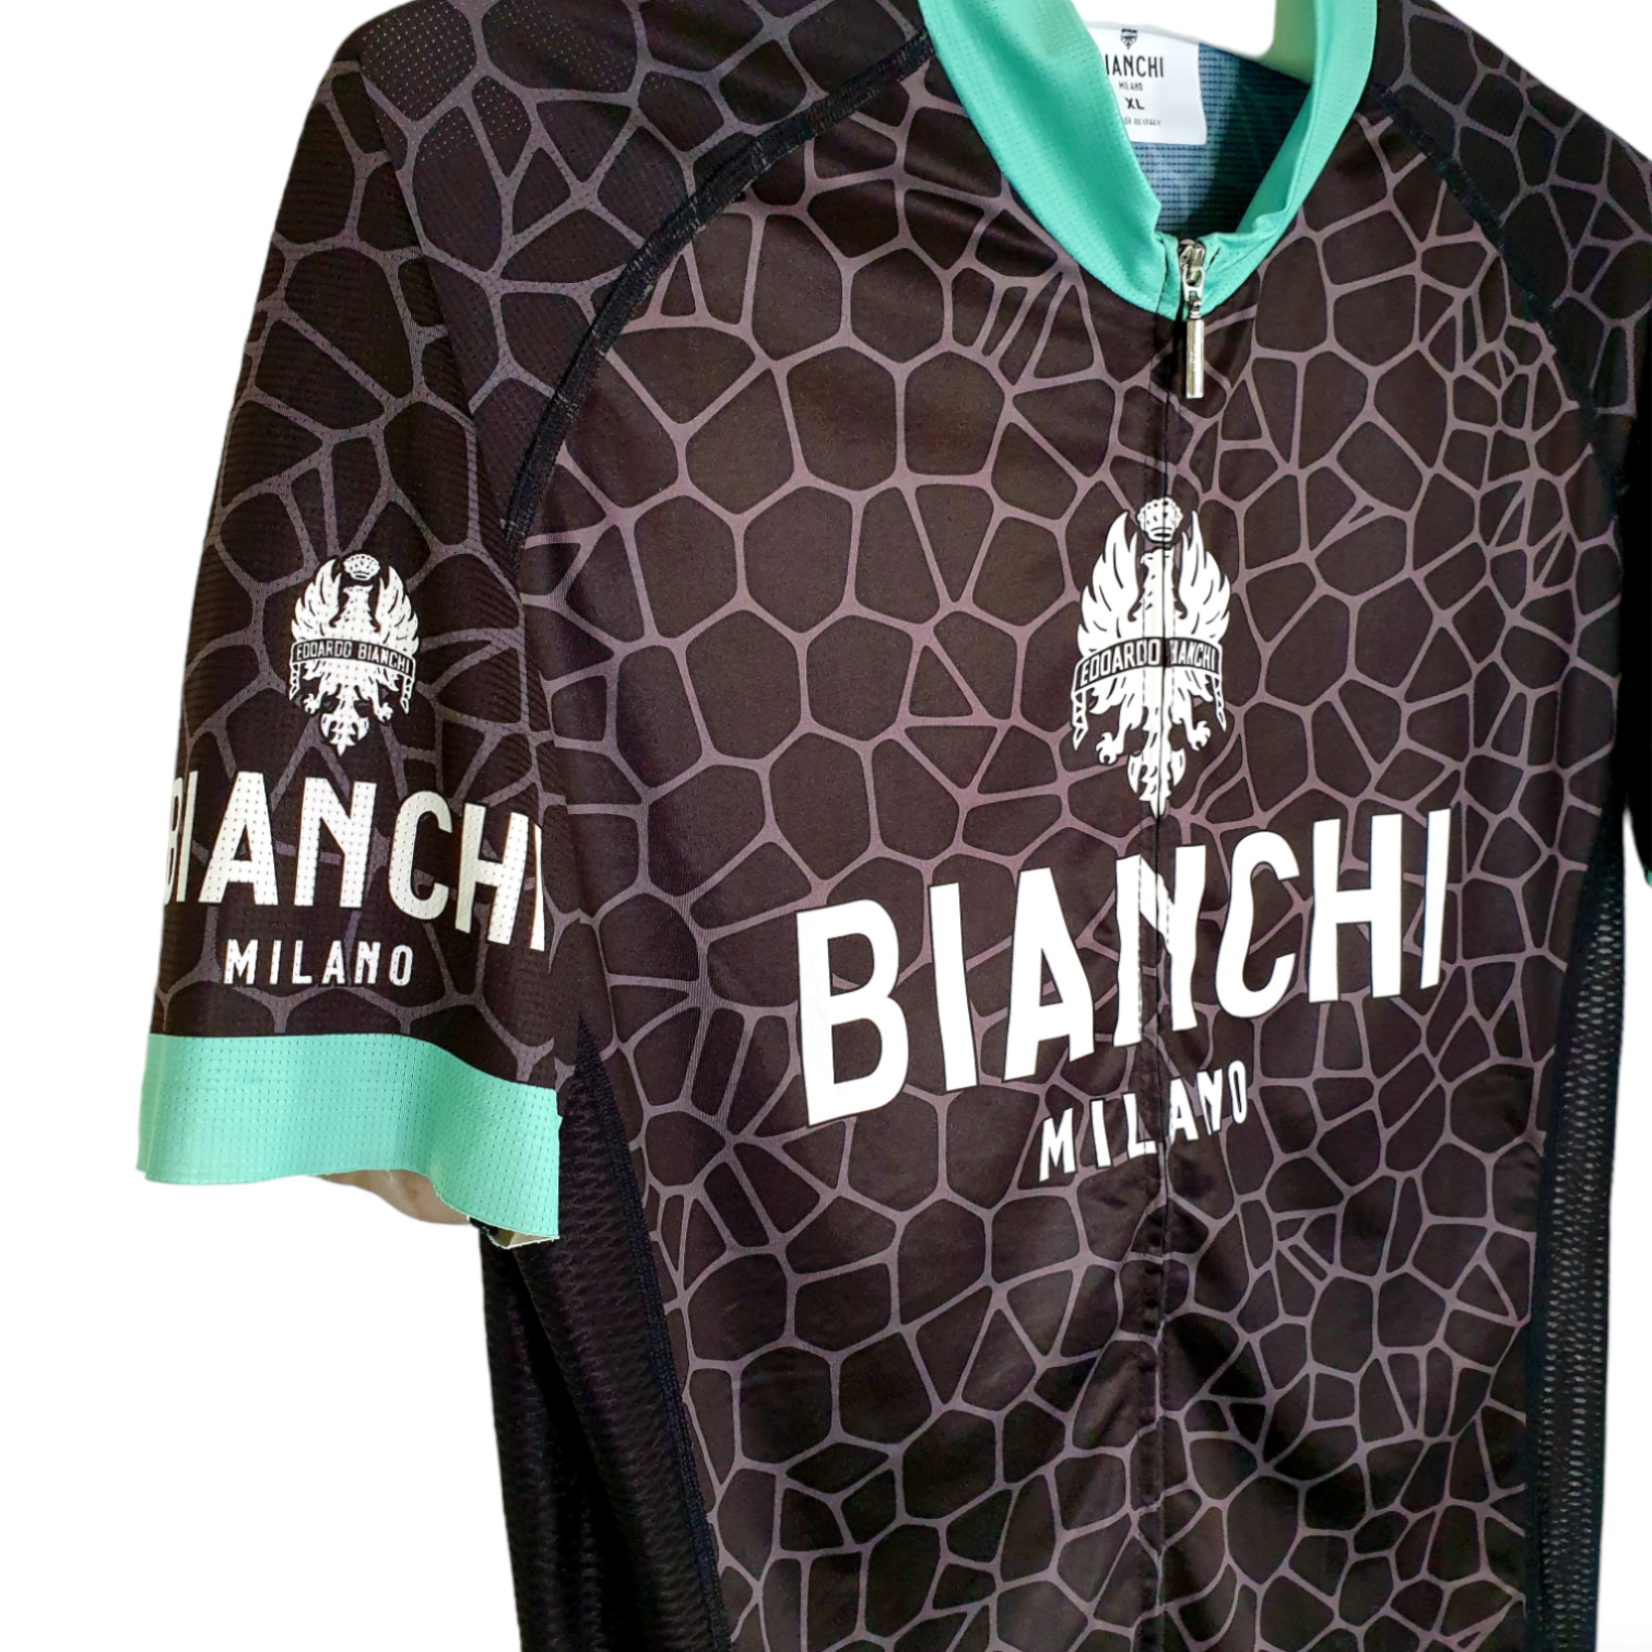 Bianchi Original Bianchi vintage cycling shirt Bianchi Milano